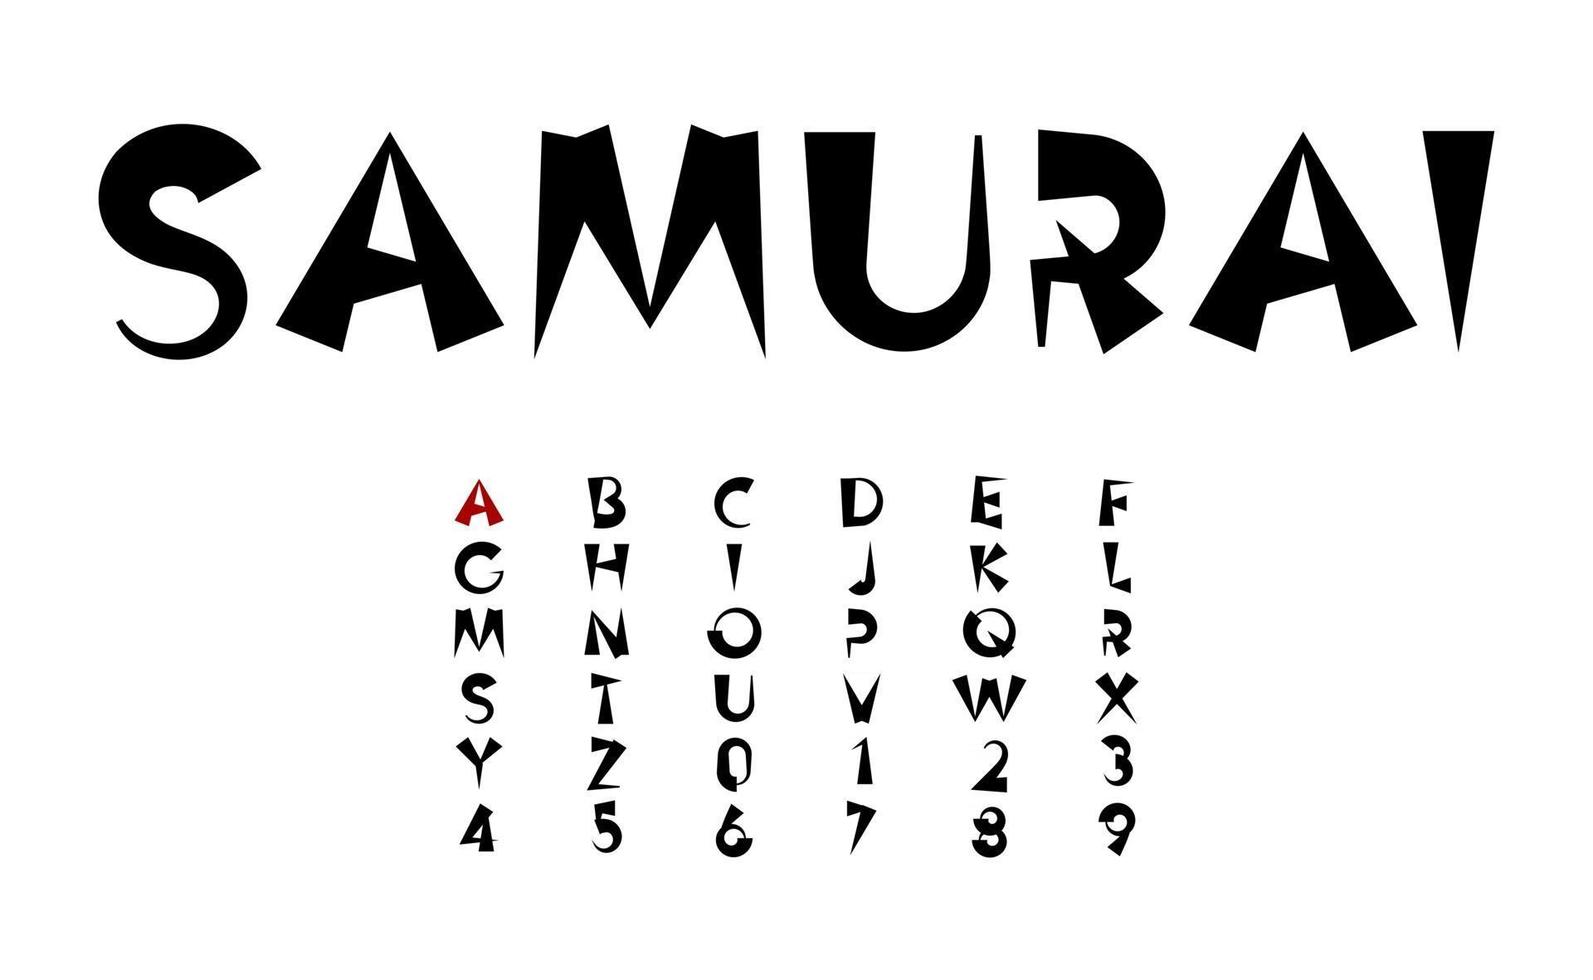 letras de vetor de tinta preta, conceito de fonte em negrito dos desenhos animados em estilo japonês e chinês para manchete, monograma e logotipo asiático. alfabeto samurai e ninja.